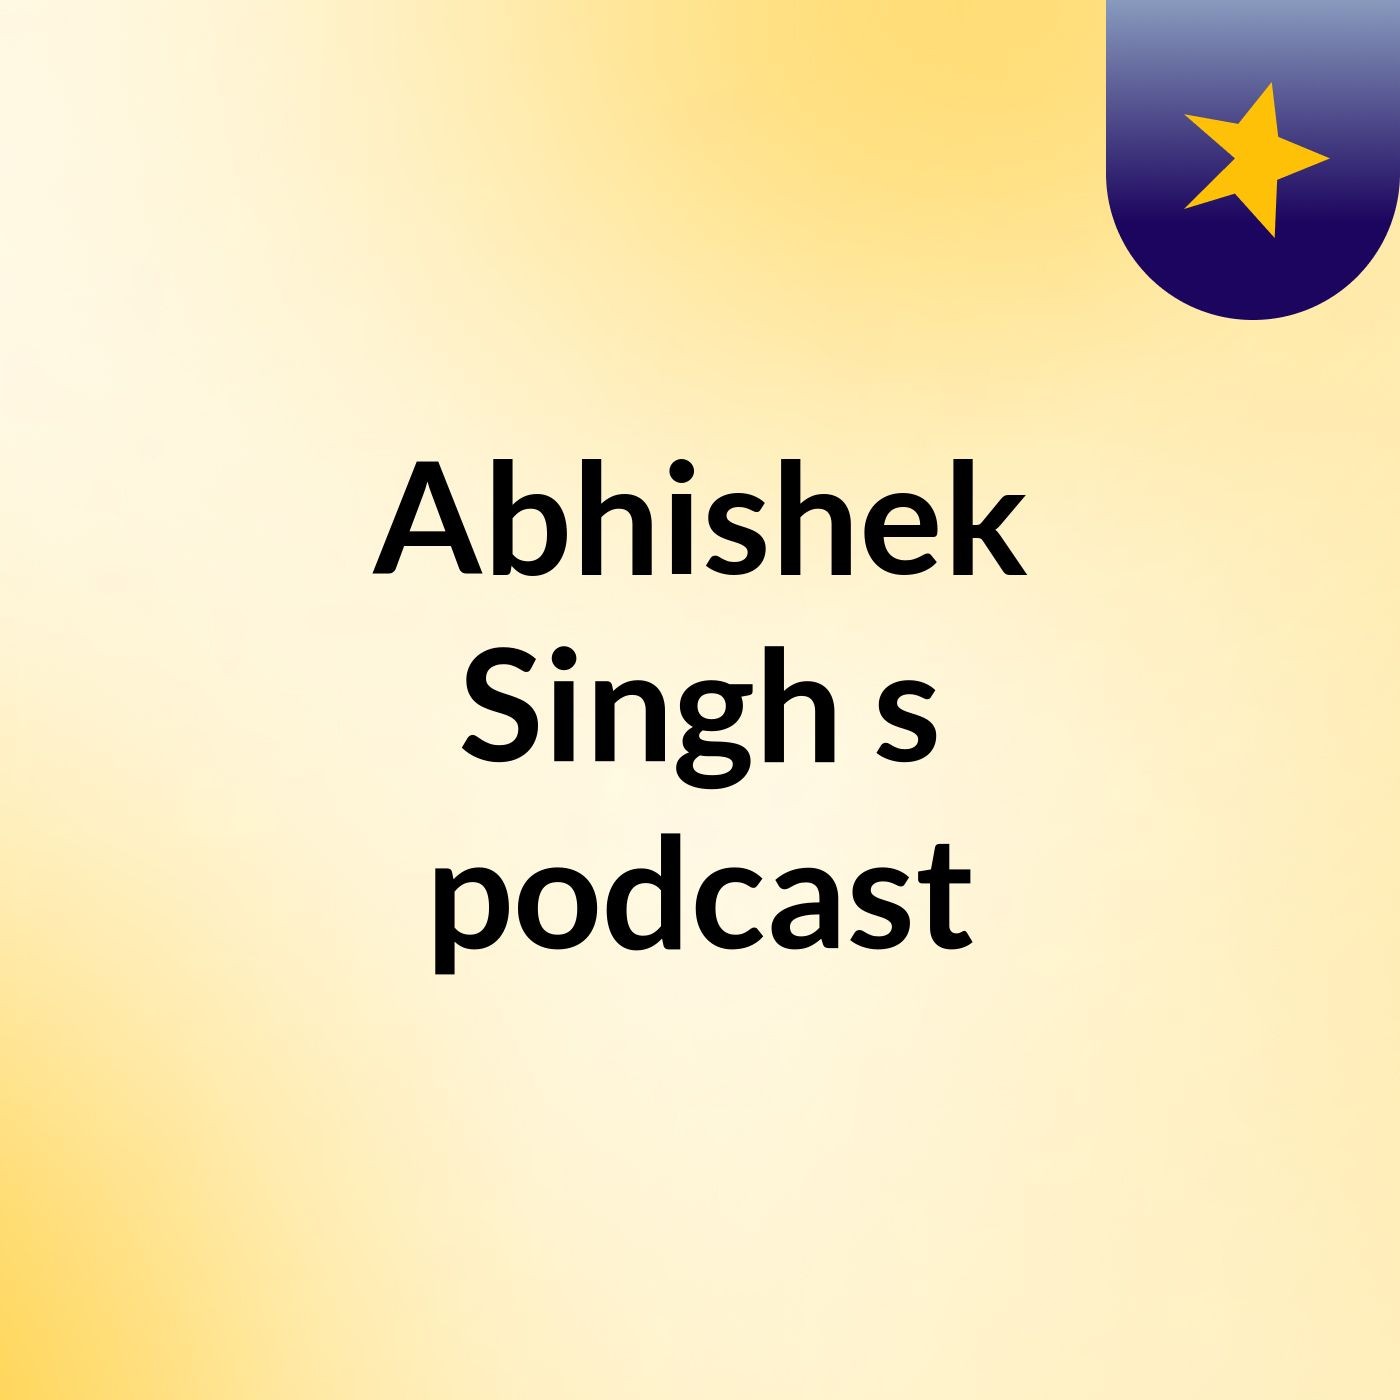 Abhishek Singh's podcast